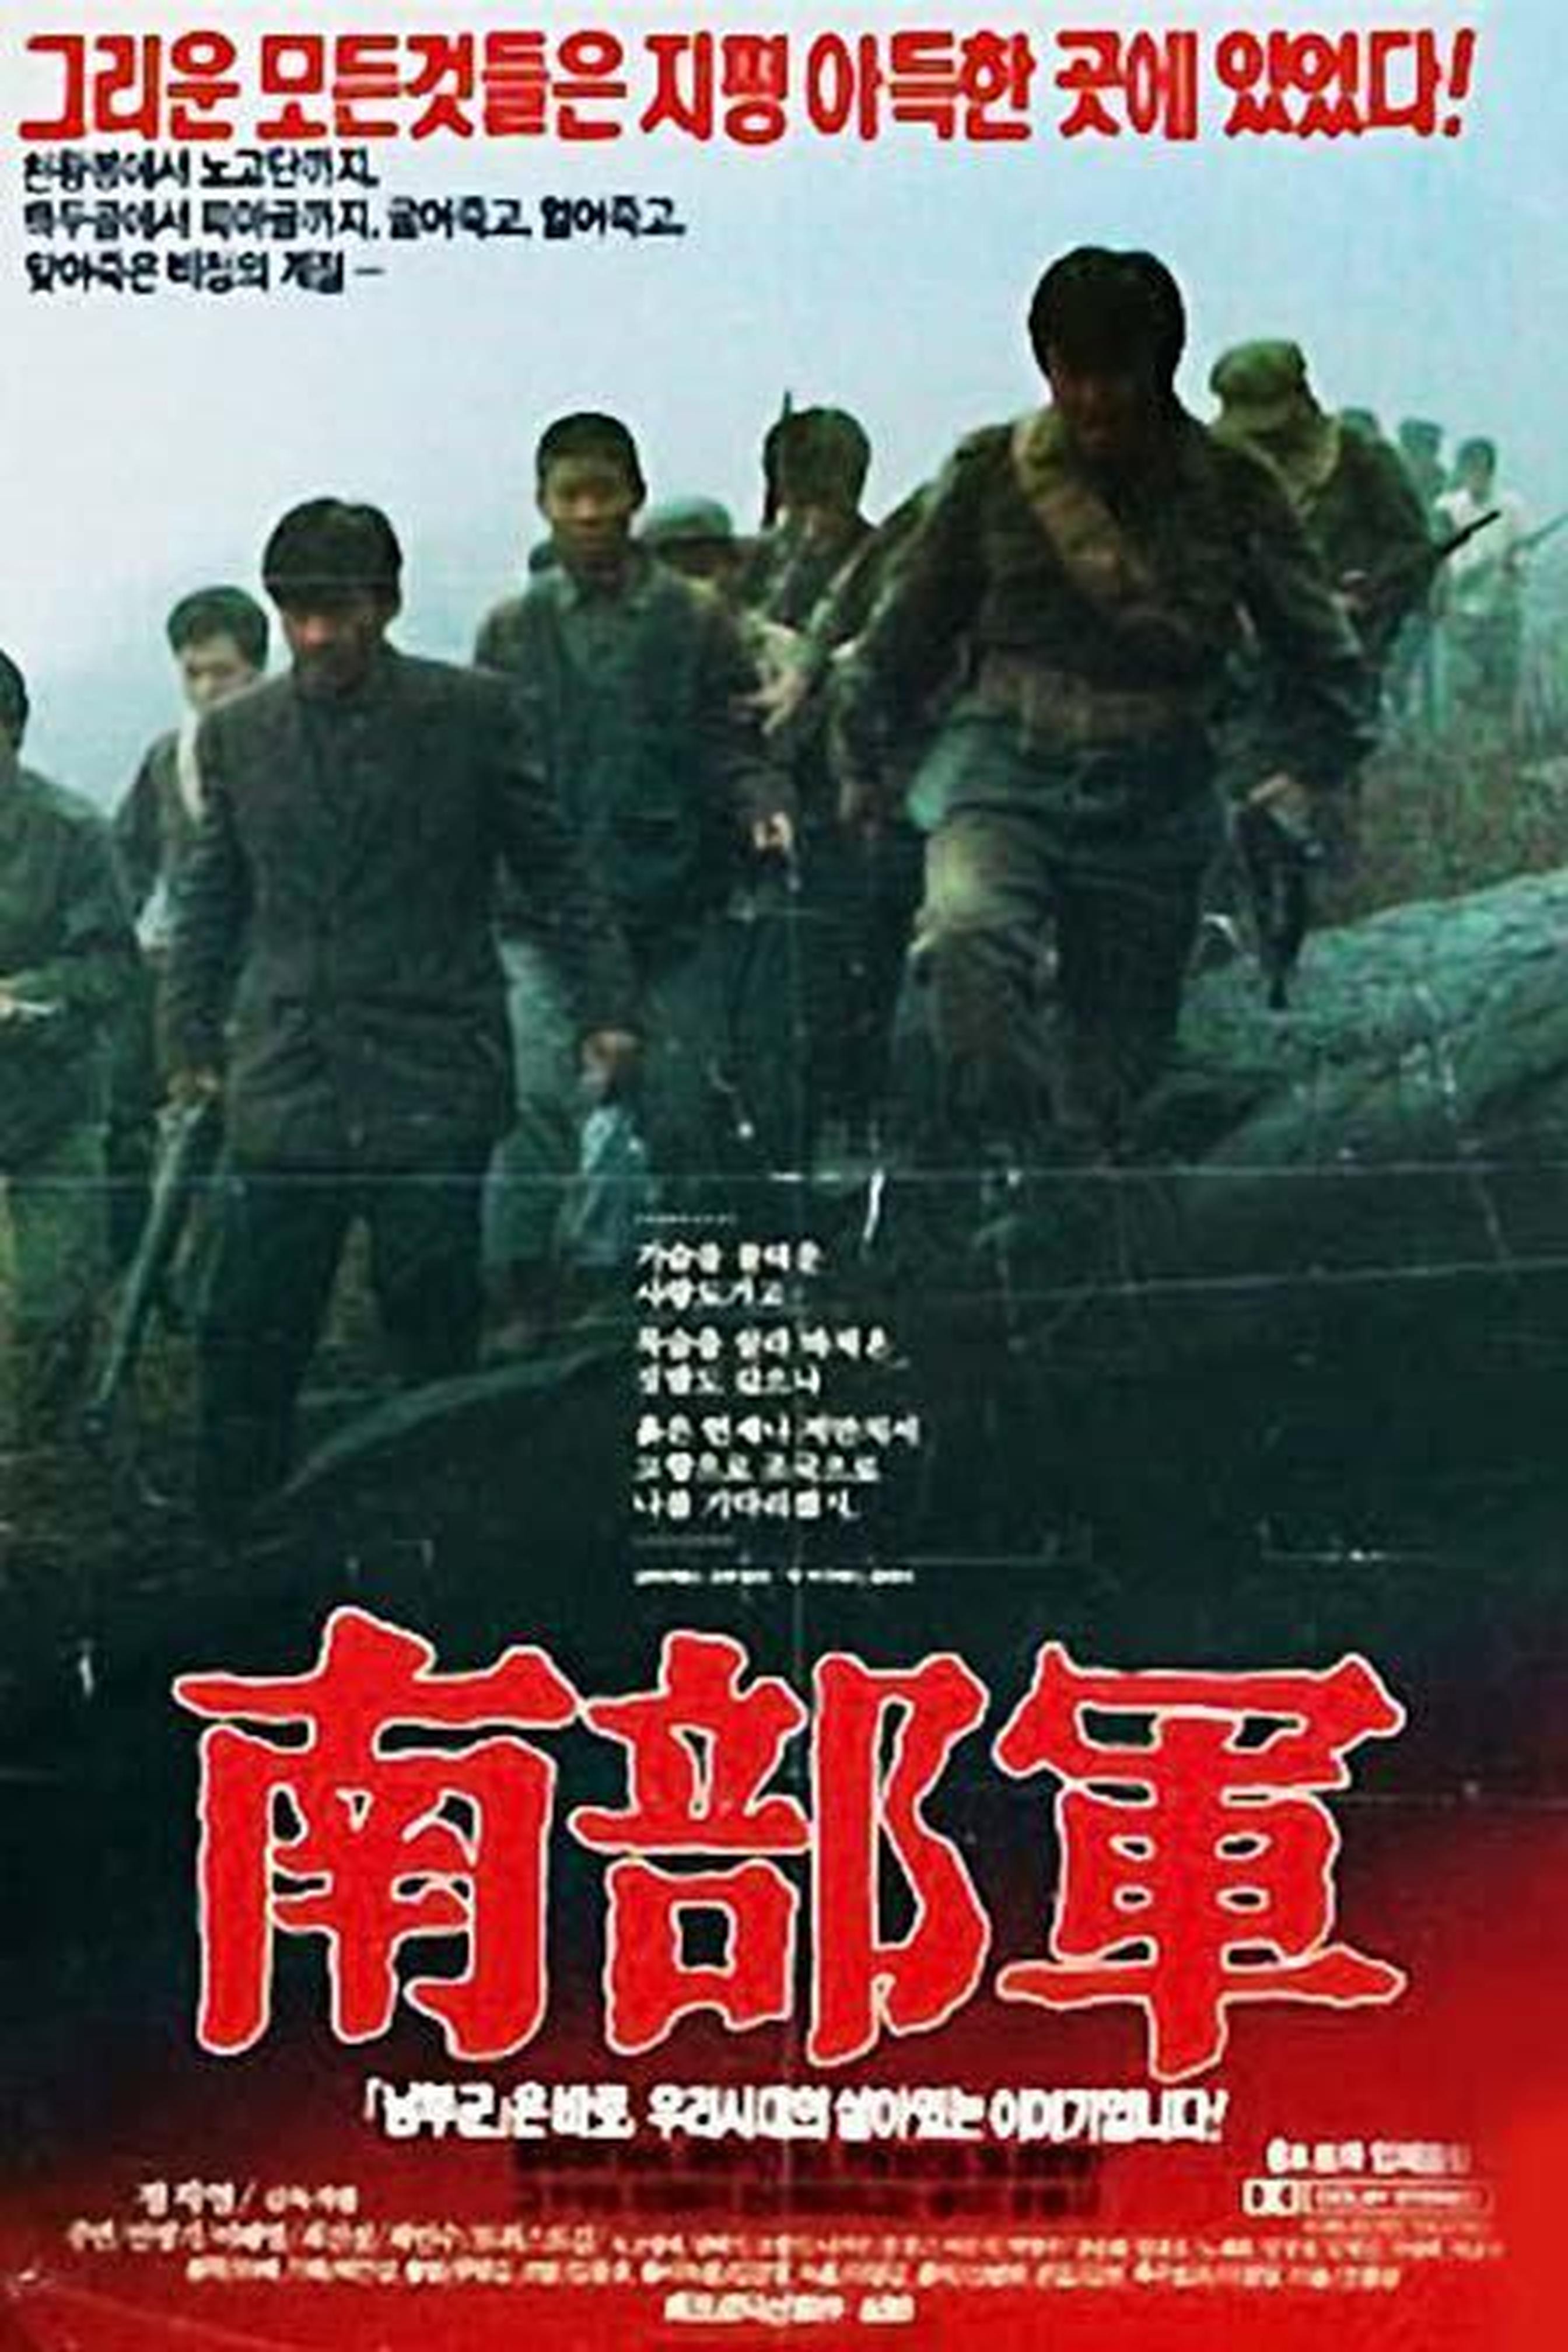 【1990-2000】《南部军》 (1990)导演郑智泳。将南部军作为历史的牺牲者来看待，并在朝鲜民族牺牲者的构图中重新勾勒了朝鲜，高度纪实的风格和《太白山脉》一脉相承。